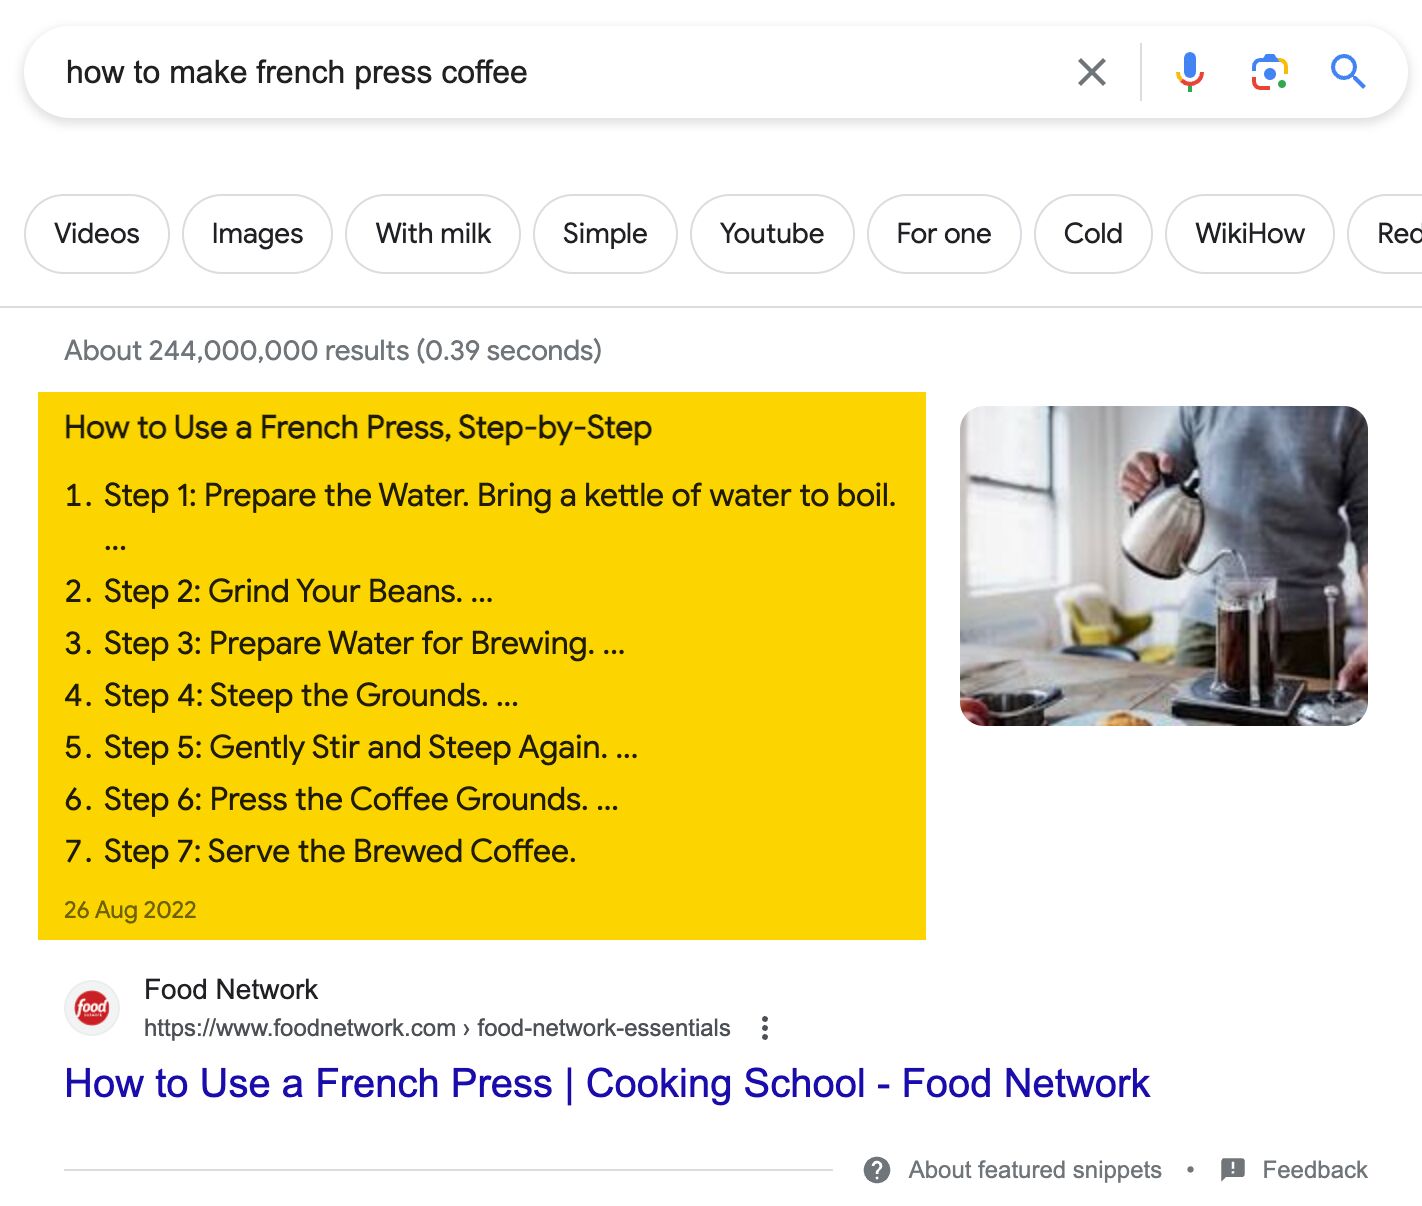 "Fransız basın kahvesi nasıl yapılır" başlıklı öne çıkan snippet, arama yapanların kılavuzun adım adım olmasını istediğini gösteriyor